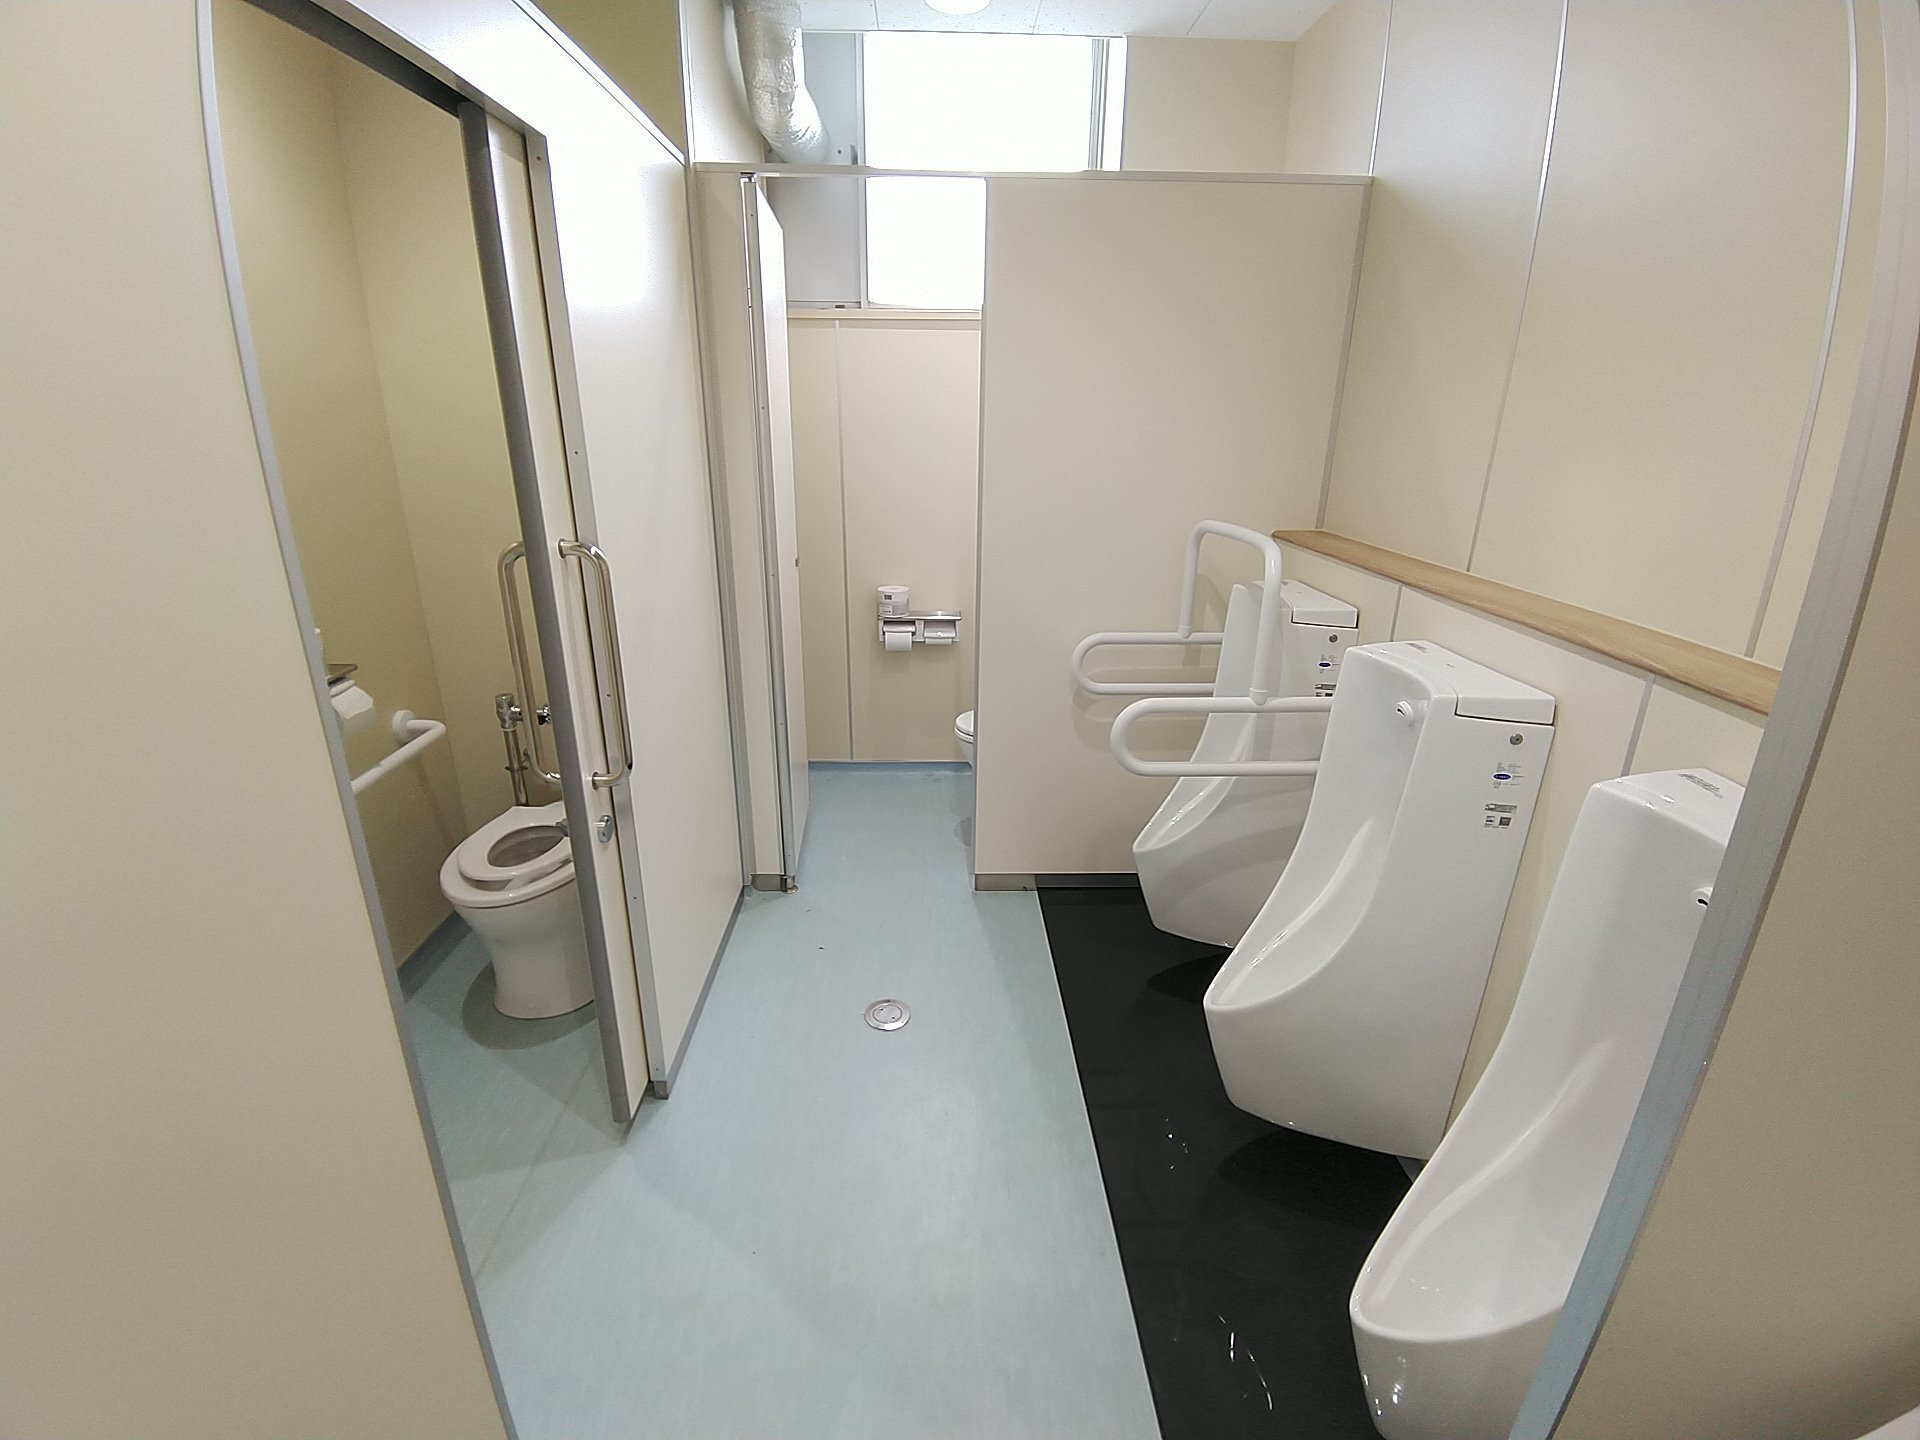 左側に洋式トイレ、右側に3つの小便器、奥のドアが開いておりトイレットペーパーホルダーがある男子トイレを入り口付近から写した写真